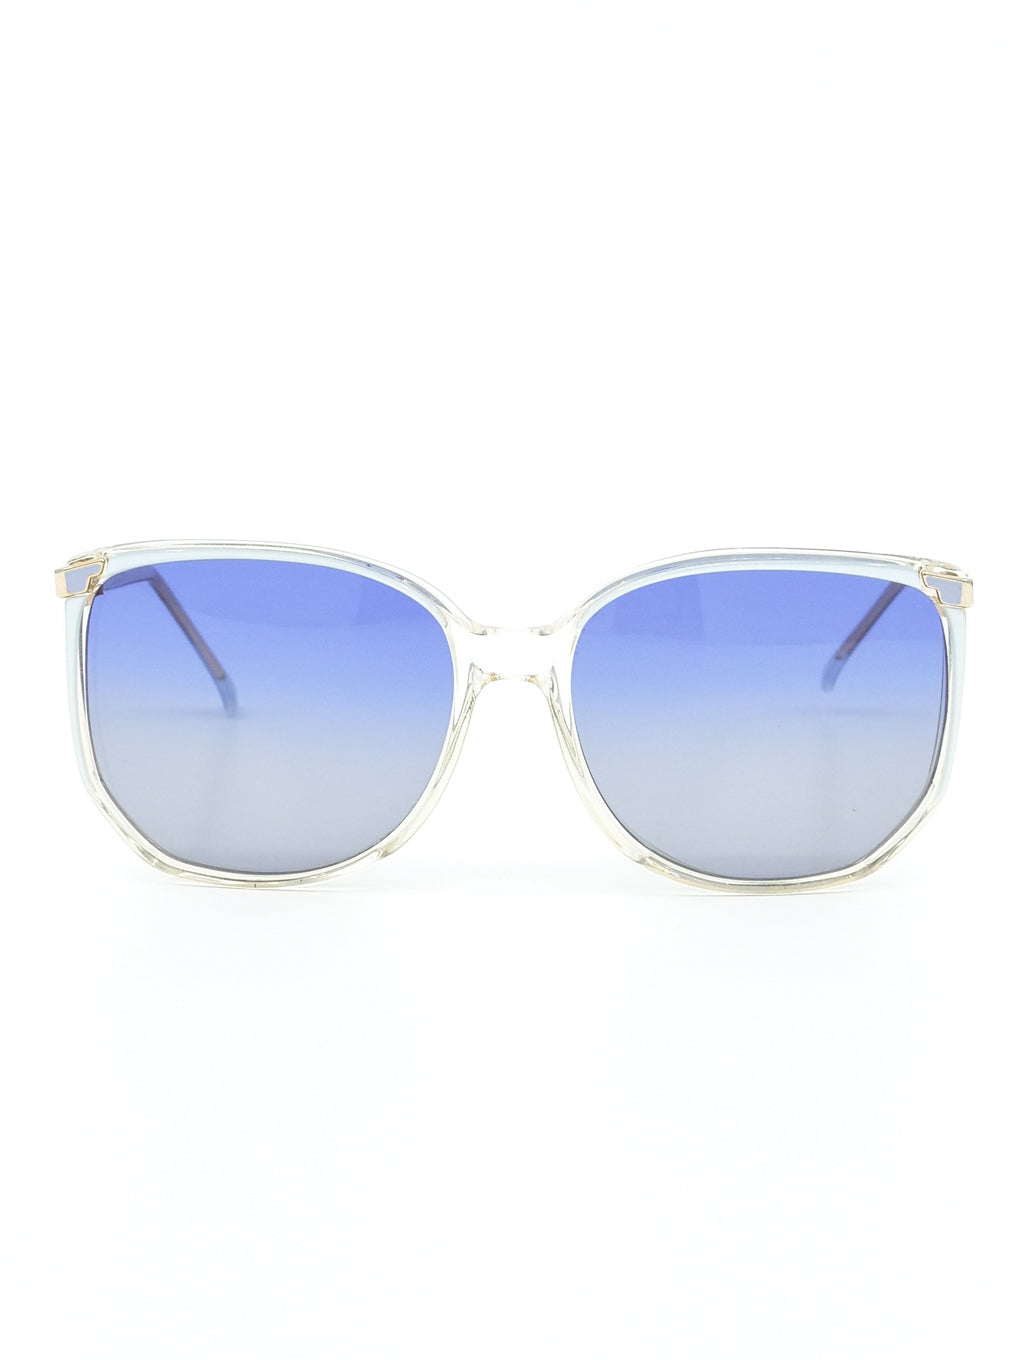 GetUSCart- KastKing Hiwassee Polarized Sport Sunglasses for Men and Women,  Matte Smoke Crystal Frame,Smoke Base Cobalt Mirror